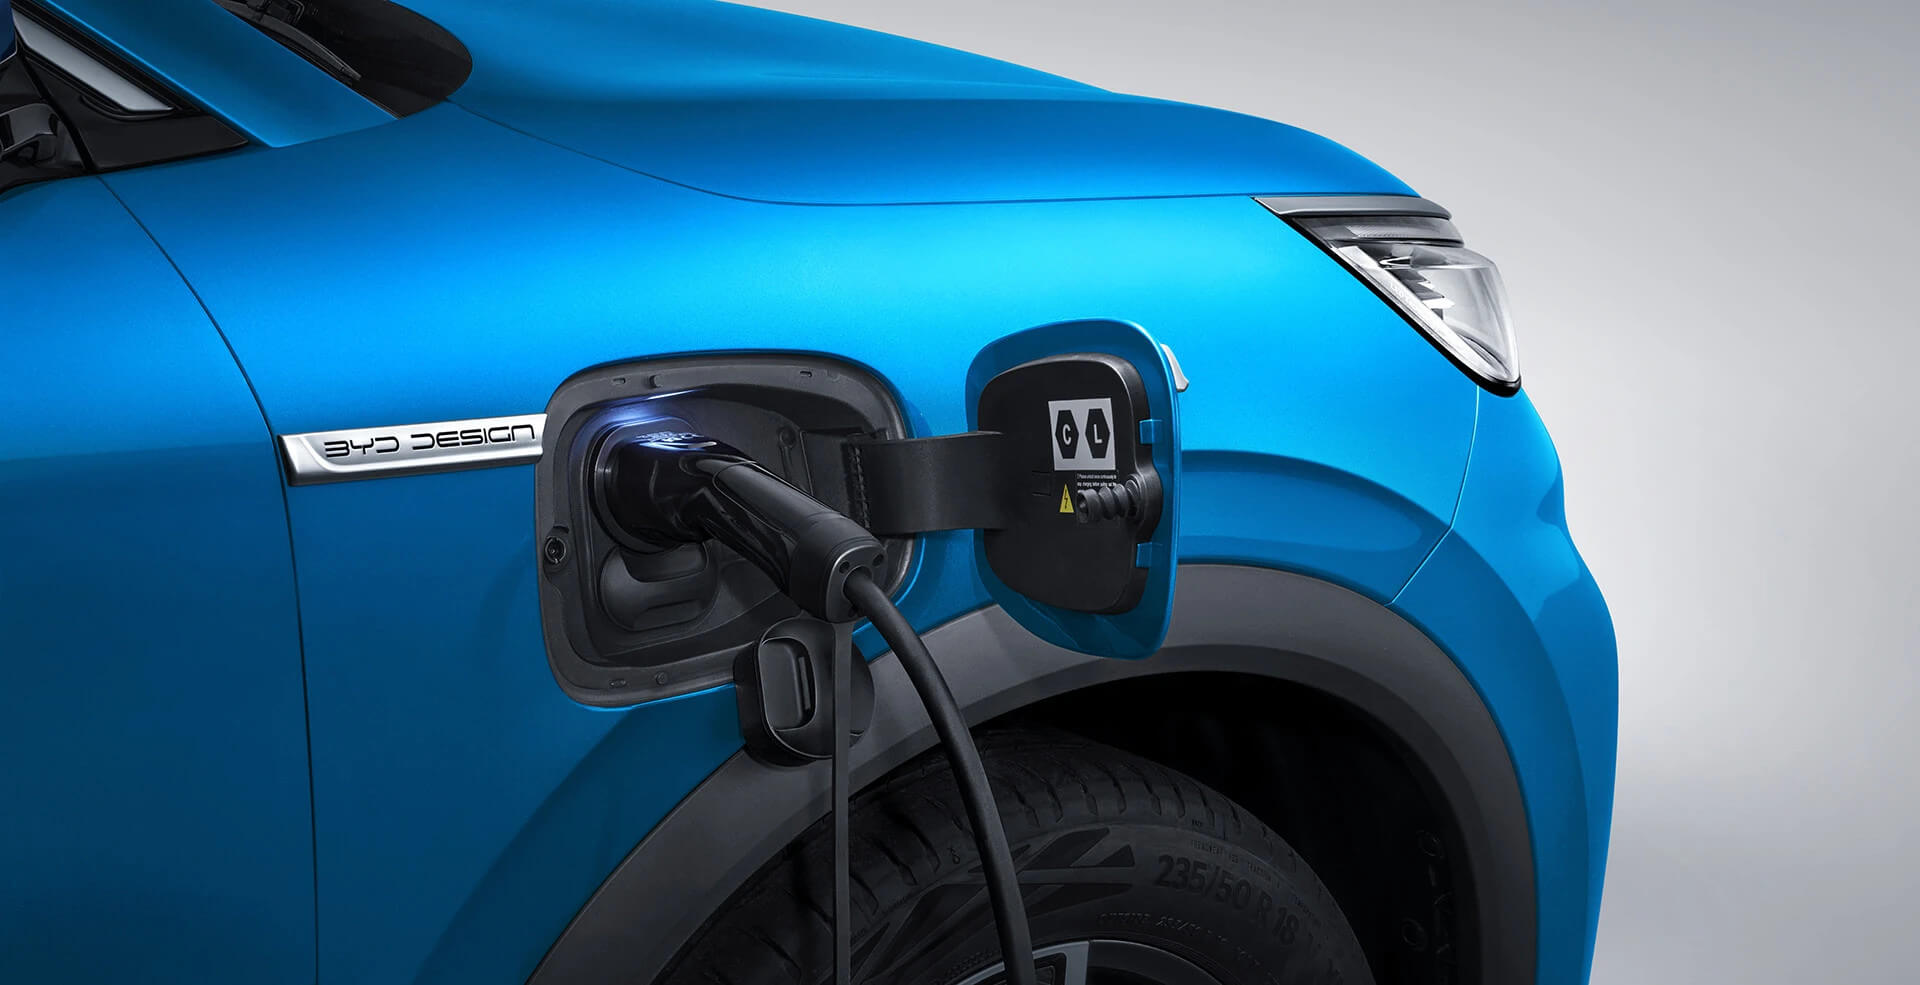 Az elektromos autó működése energiahatékonyabb, mint a belsőégésű motoros autóké.